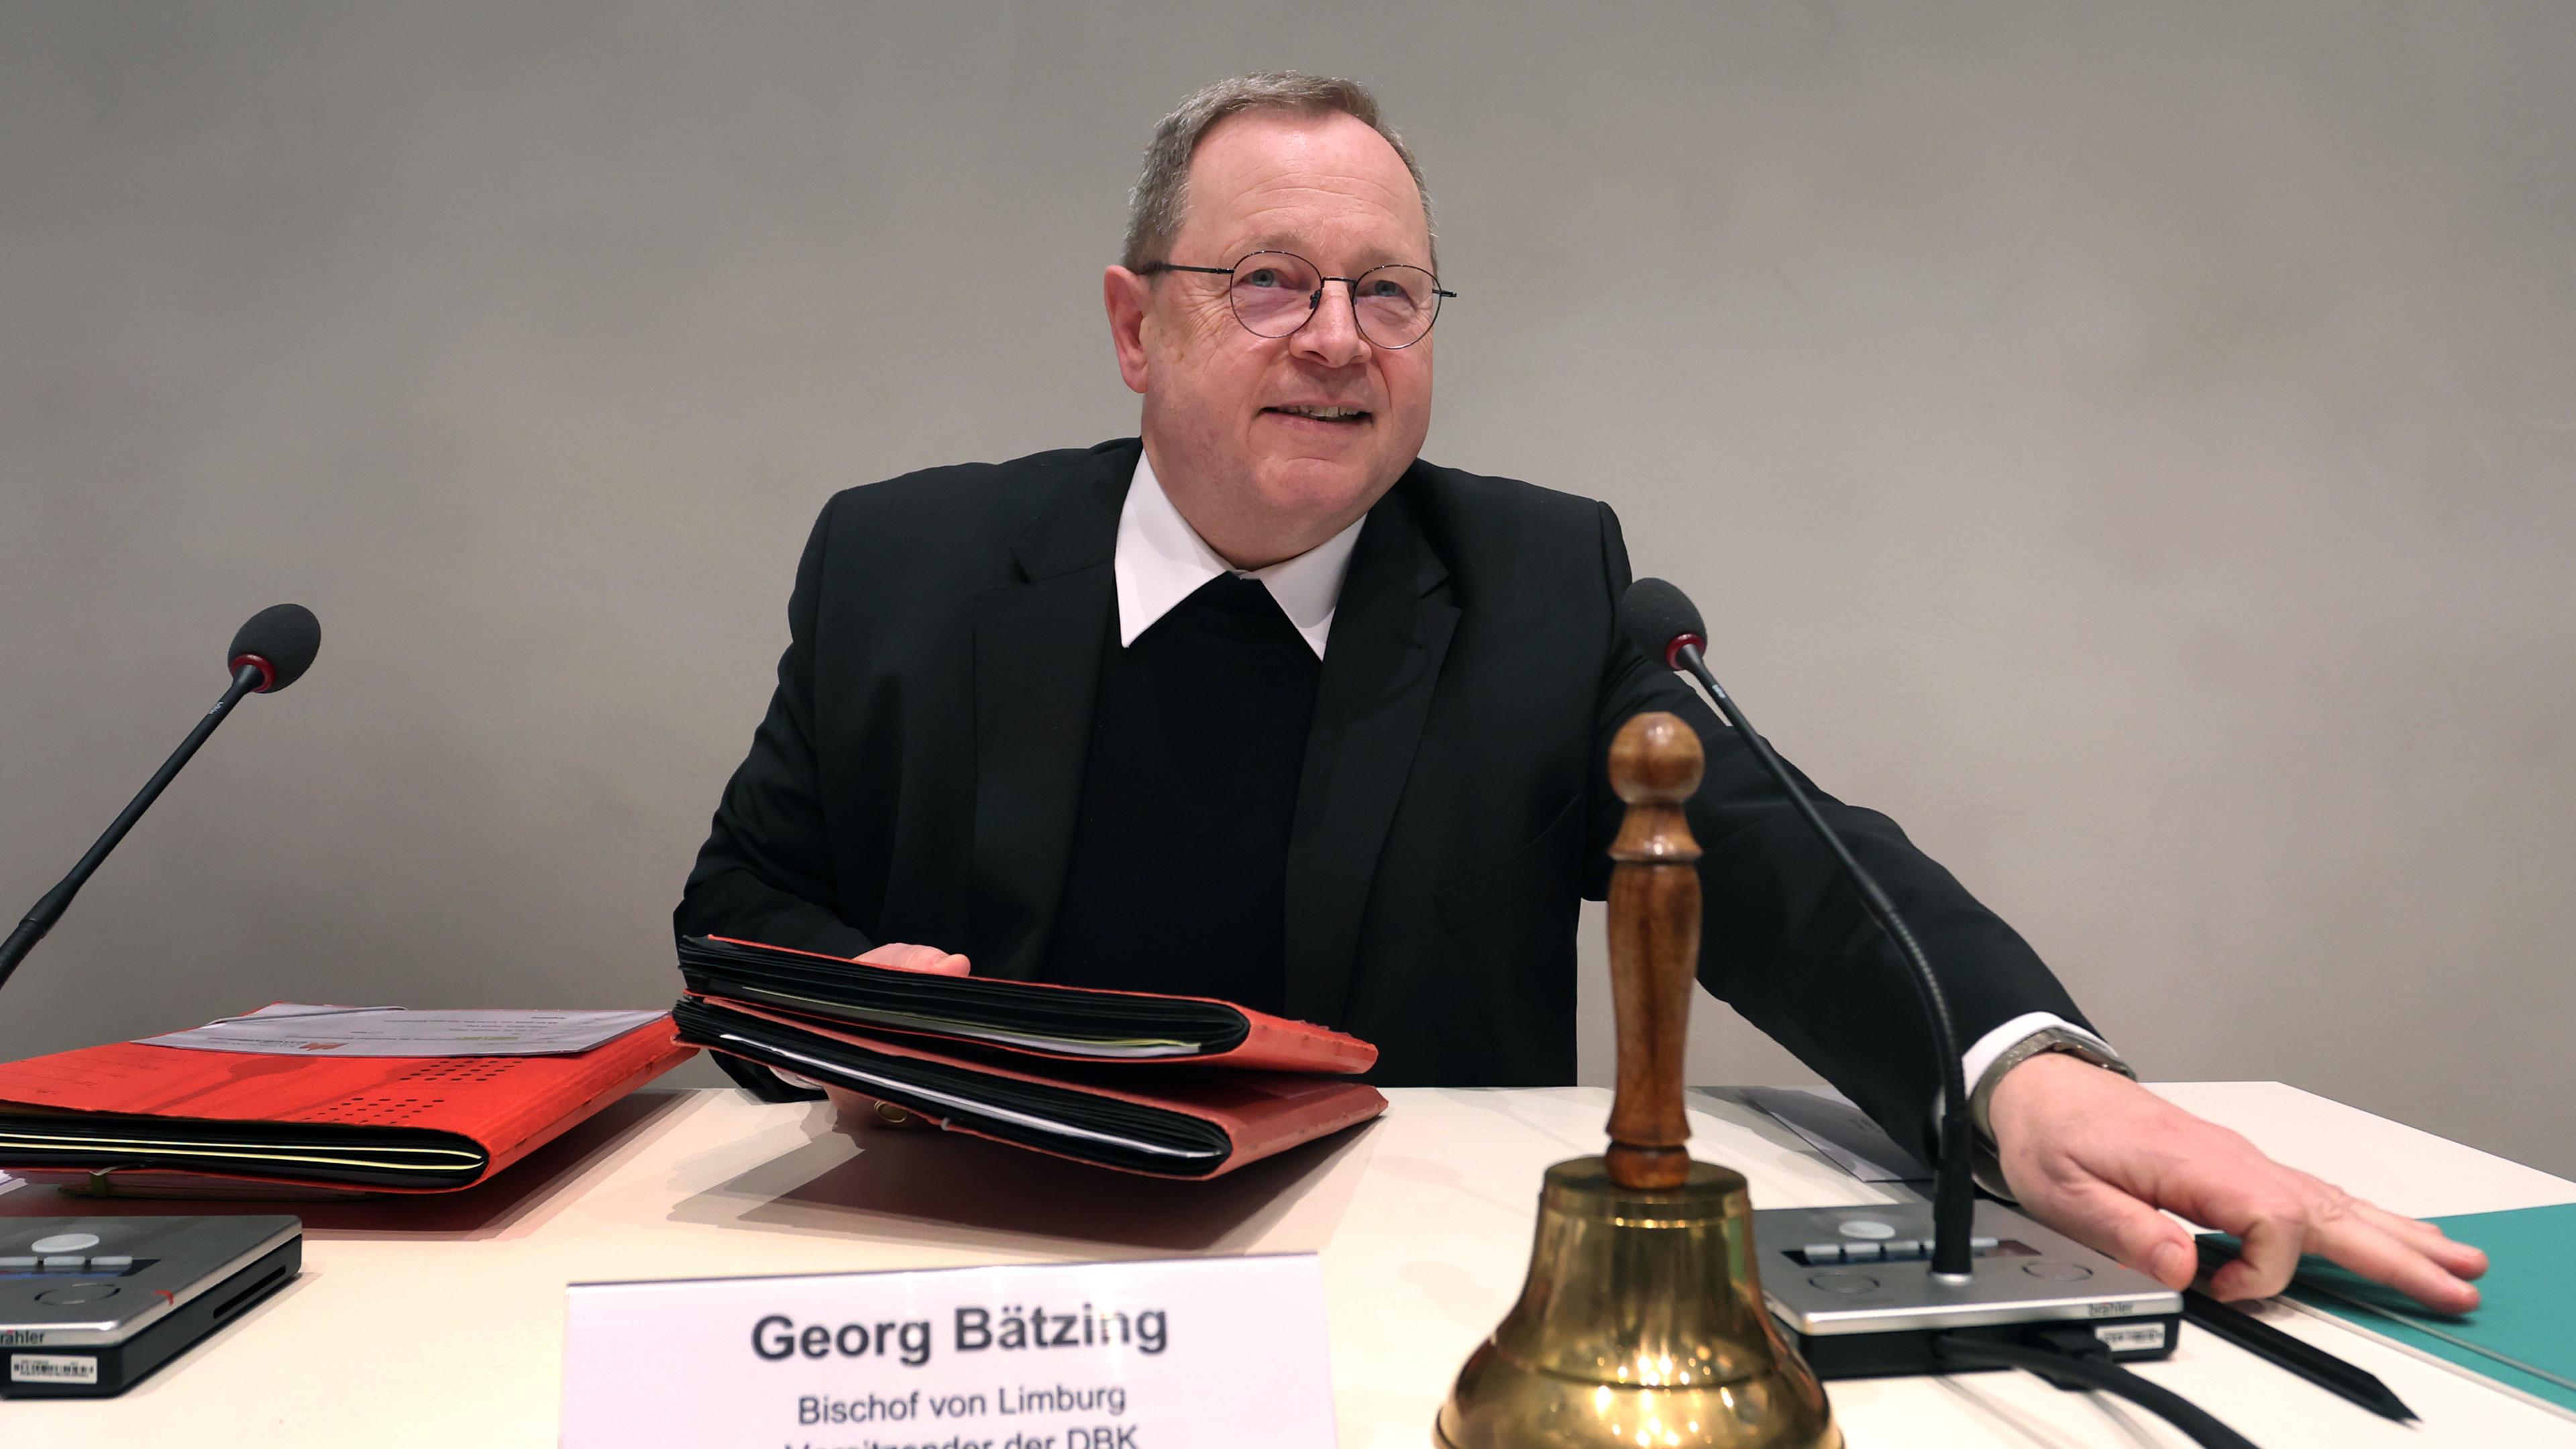 Georg Bätzing, Bischof von Limburg und Vorsitzender der Deutschen Bischofskonferenz eröffnet die Konferenz